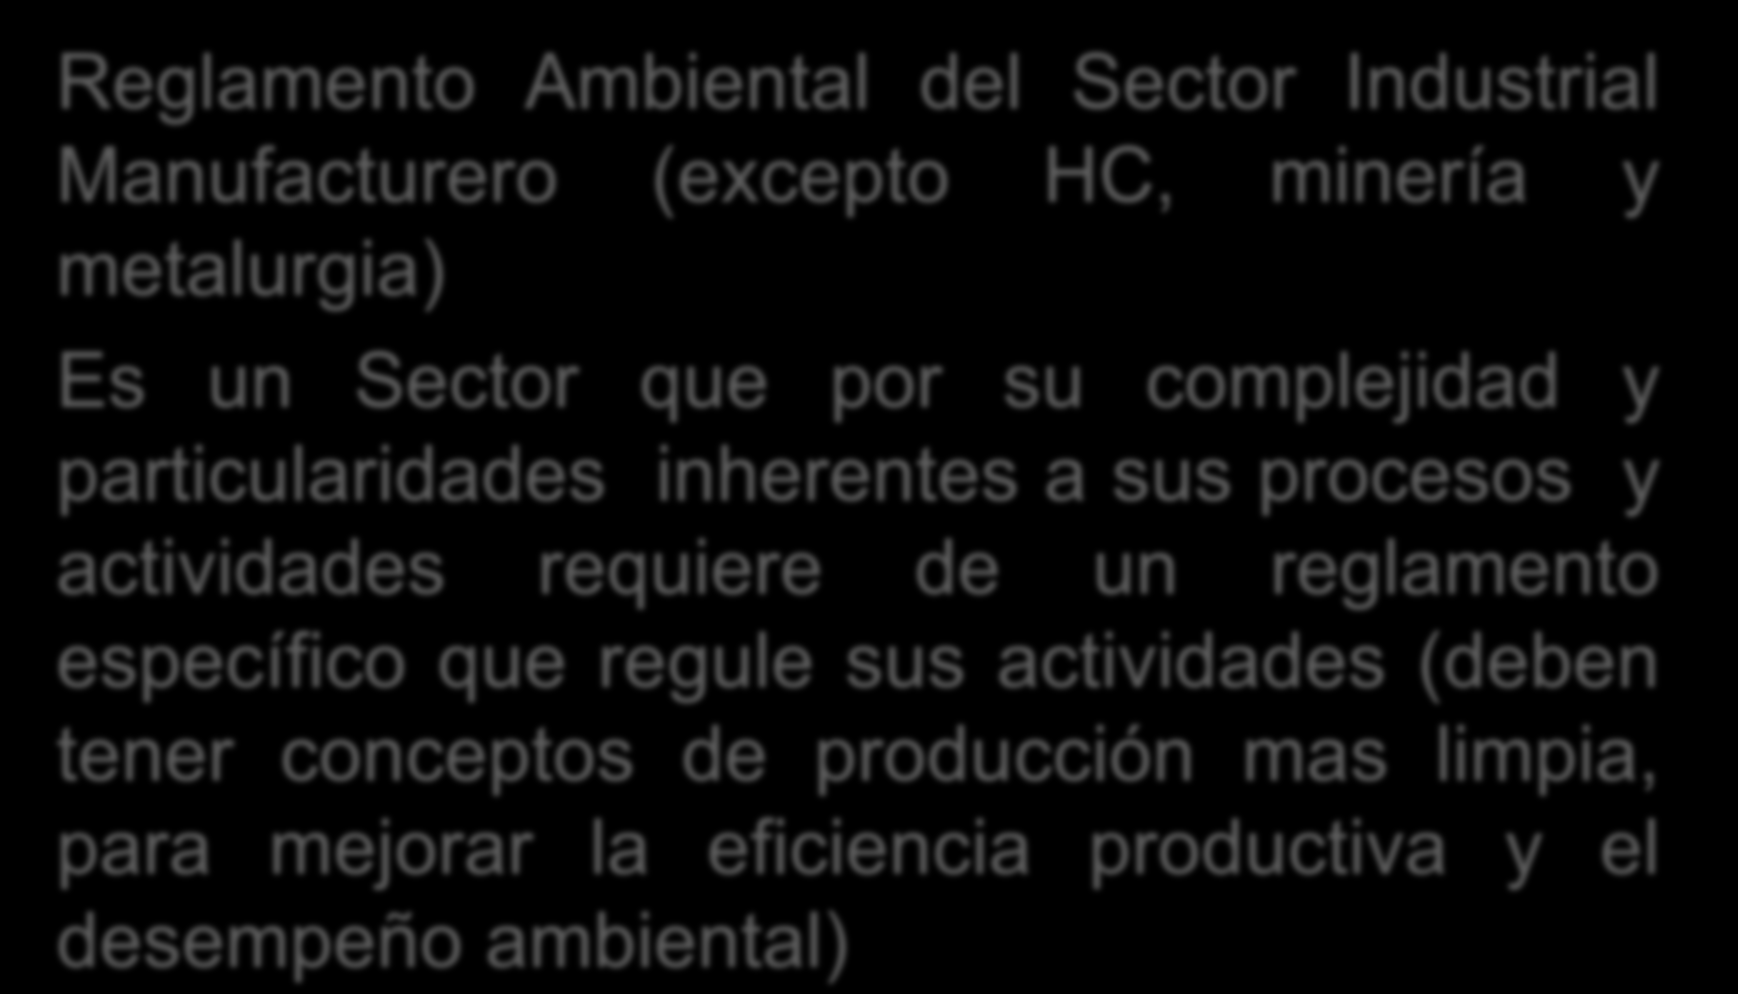 ANEXO A-2 = RASIM Reglamento Ambiental del Sector Industrial Manufacturero (excepto HC, minería y metalurgia) Es un Sector que por su complejidad y particularidades inherentes a sus procesos y